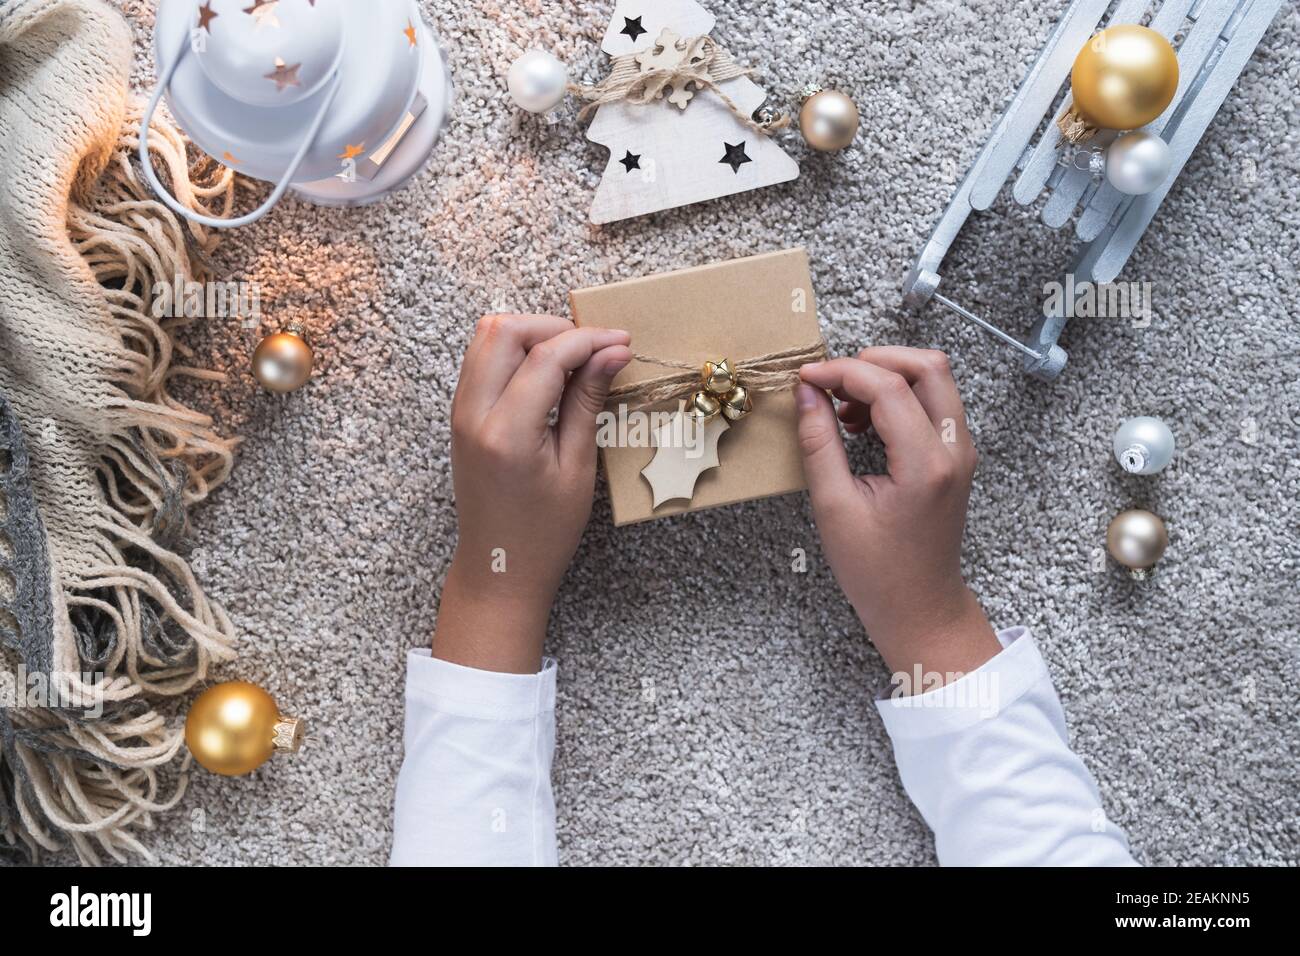 Weihnachtshintergrund mit gemütlicher Winteratmosphäre. Kinderhände öffnen ein Geschenk für das neue Jahr. Stockfoto